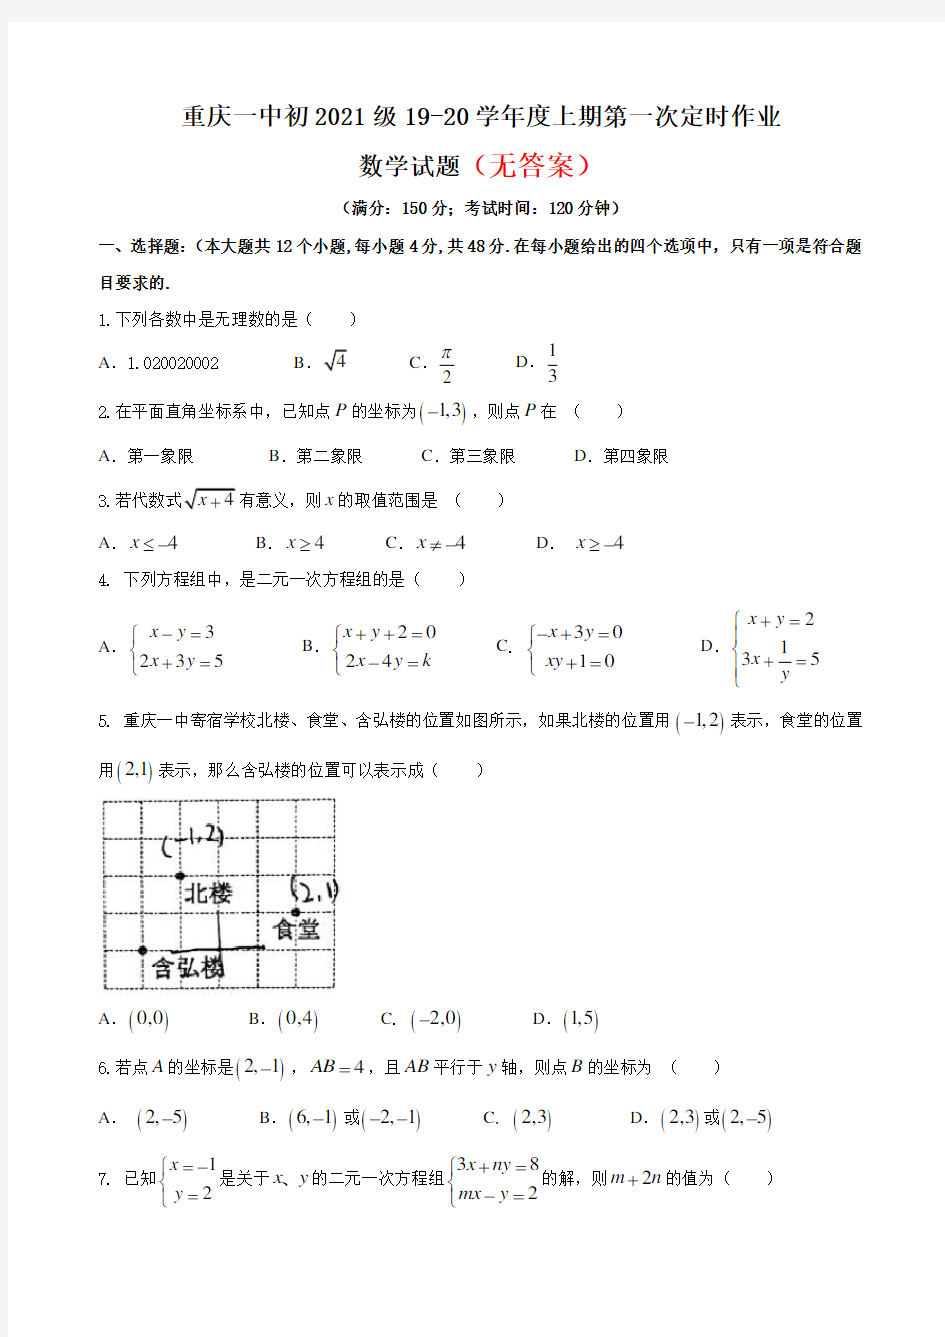 〈word版〉八年级(上)月考数学试卷(10月份)共3份